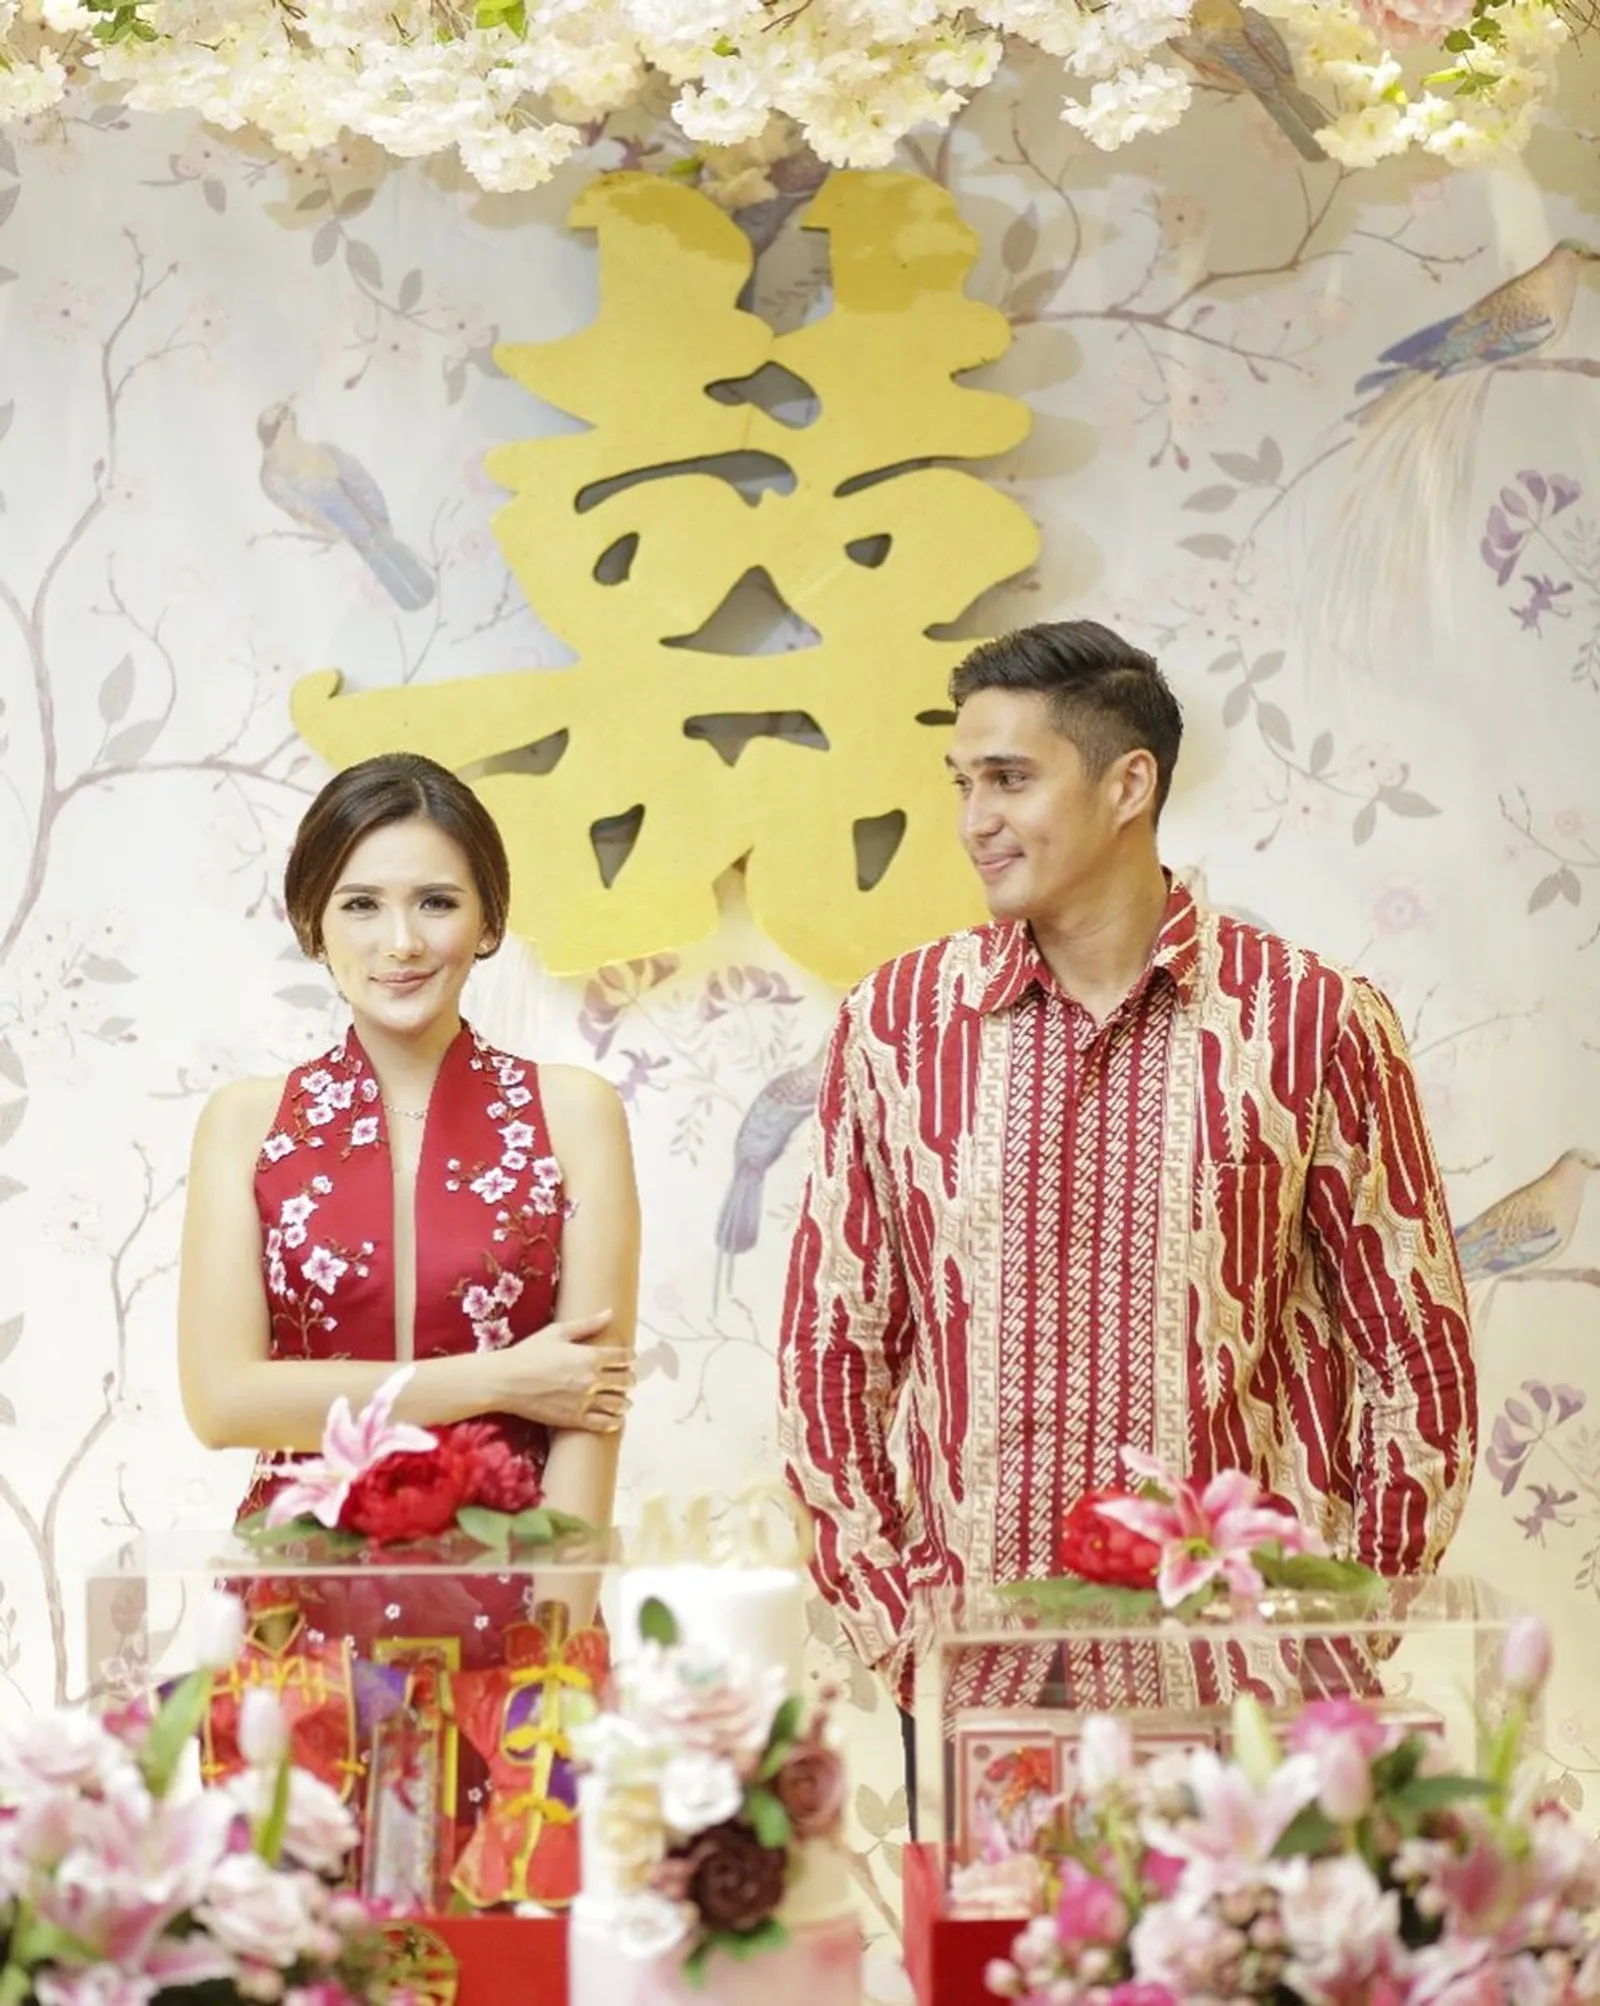 Berdarah Tionghoa, 9 Artis Ini Lakukan Prosesi Sangjit Sebelum Menikah